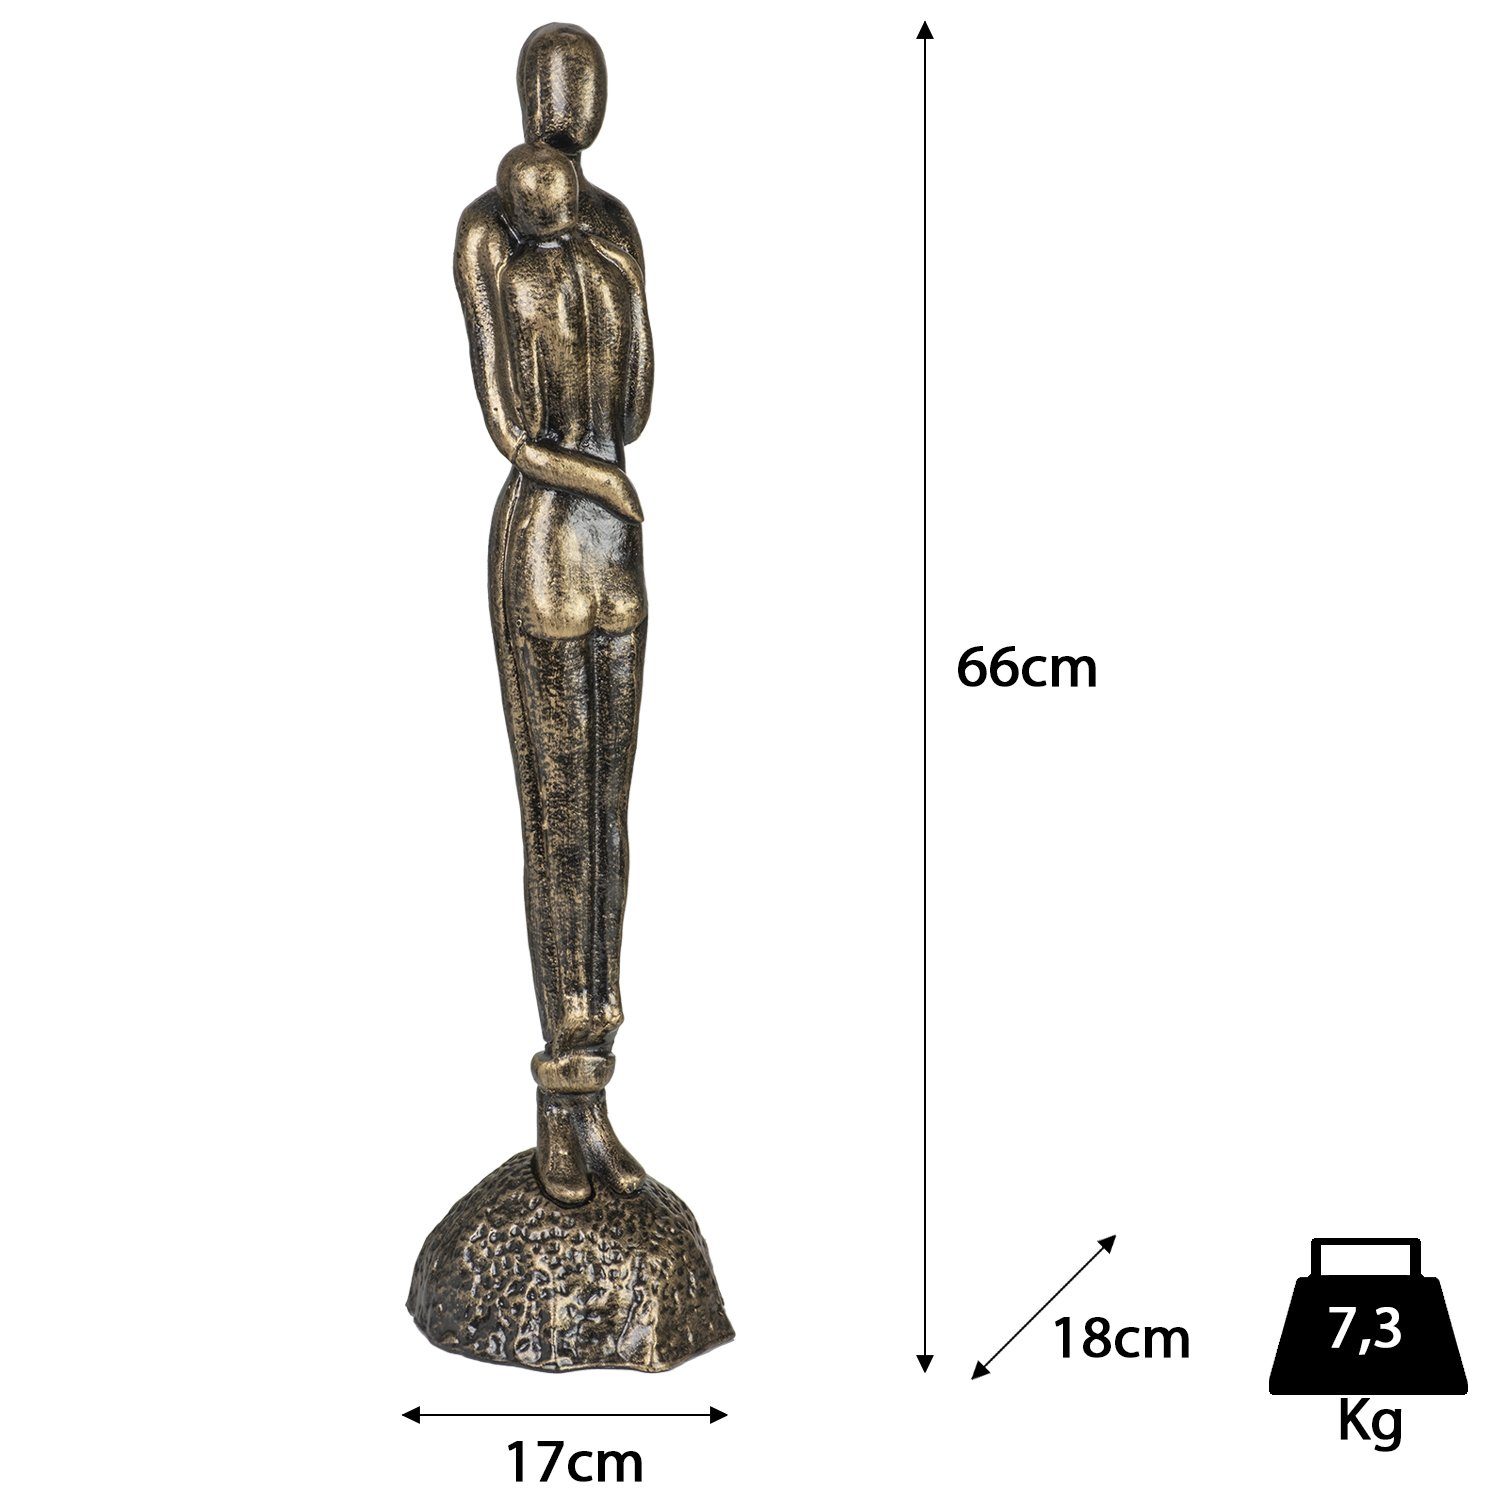 Dekofigur Farbe Pärchen stehend Dekoration 66cm Höhe Vertrautes 7,3Kg, Figur Figuren Deko Skulptur Statue Moritz Bronze